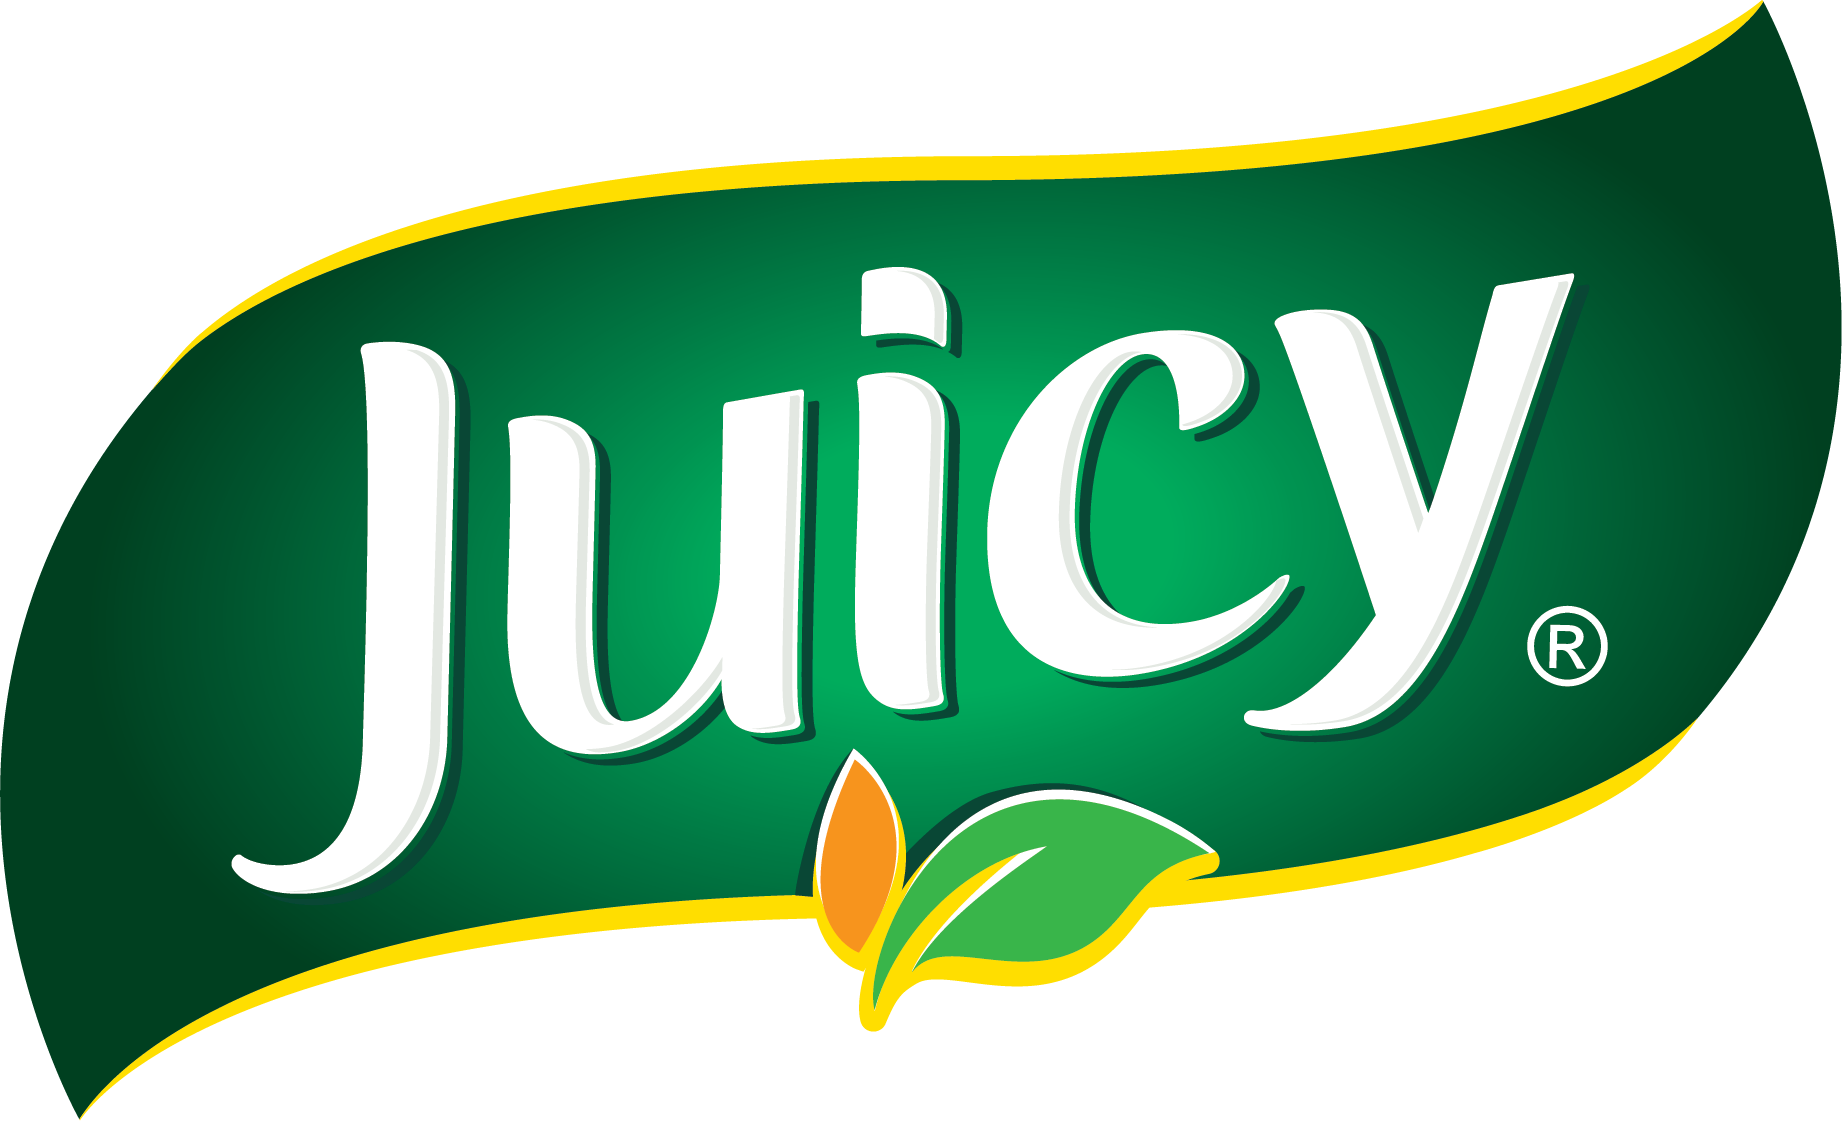 Juicy logo